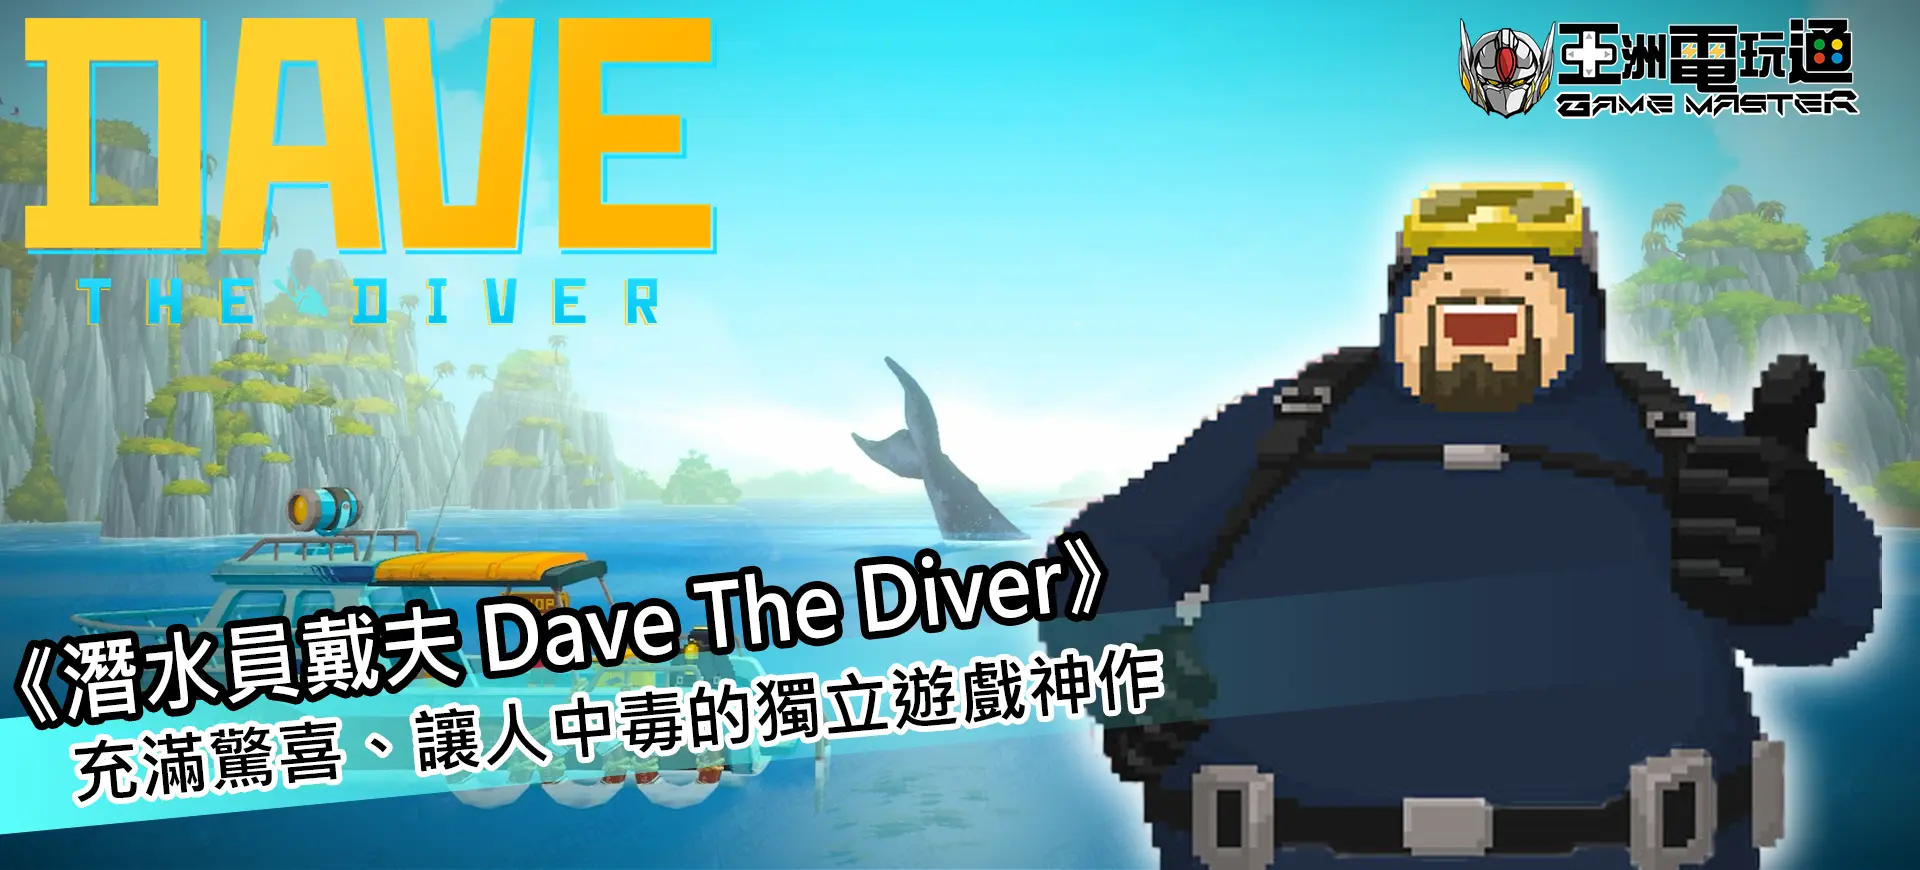 亞洲電玩通 - 潛水員戴夫 Dave The Diver - 充滿驚喜、讓人中毒的獨立遊戲神作